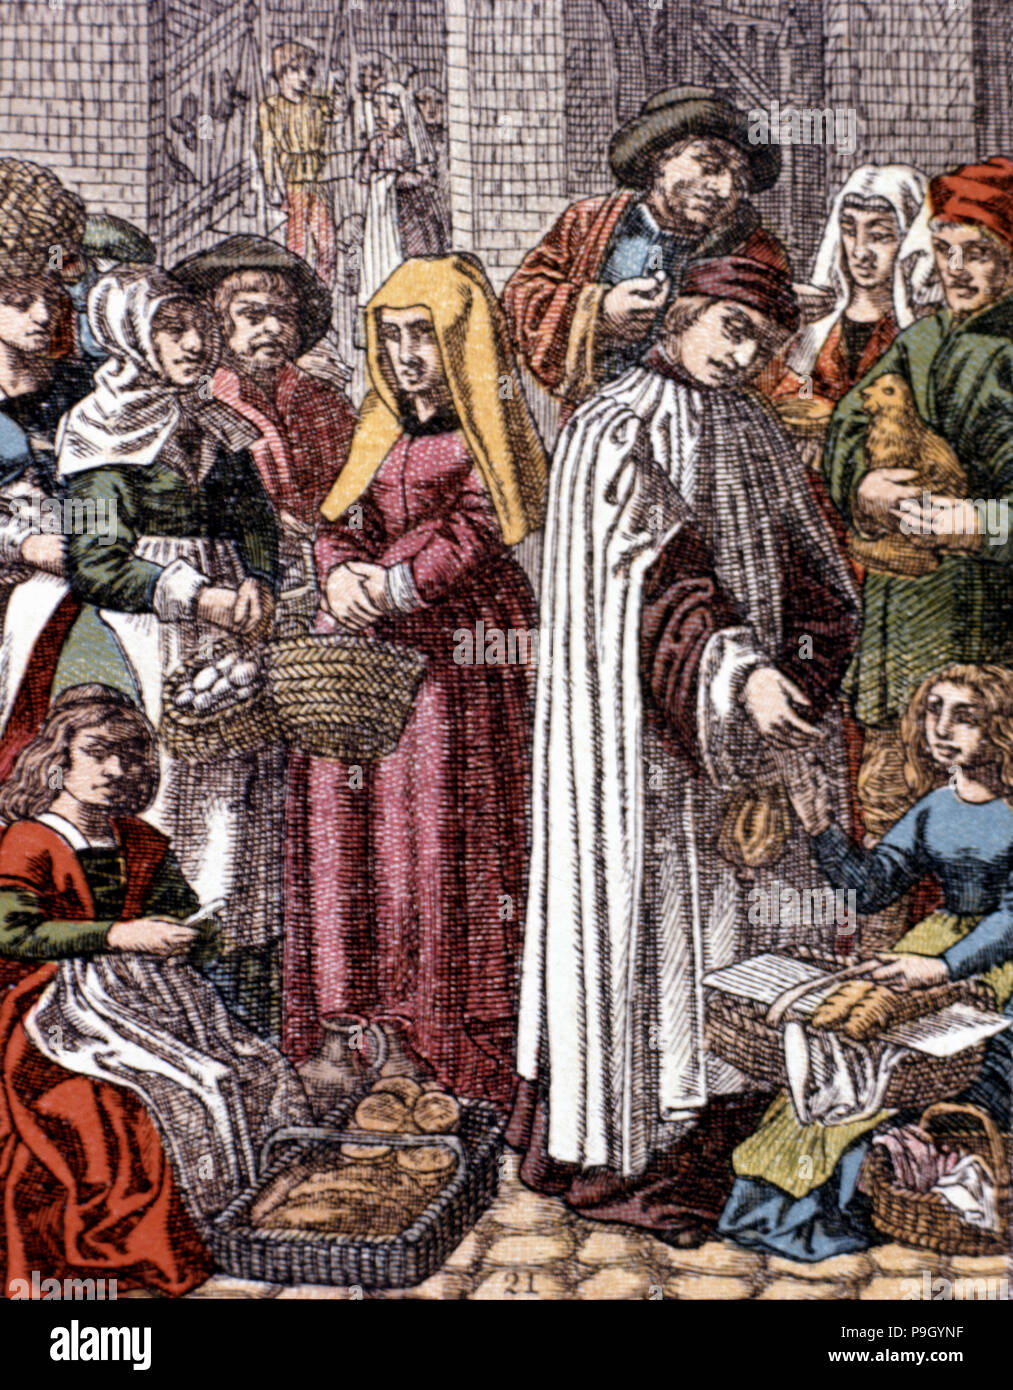 La vita medievale, il mercato alla fine del 1400, in una incisione di Hotteroth, 1870. Foto Stock